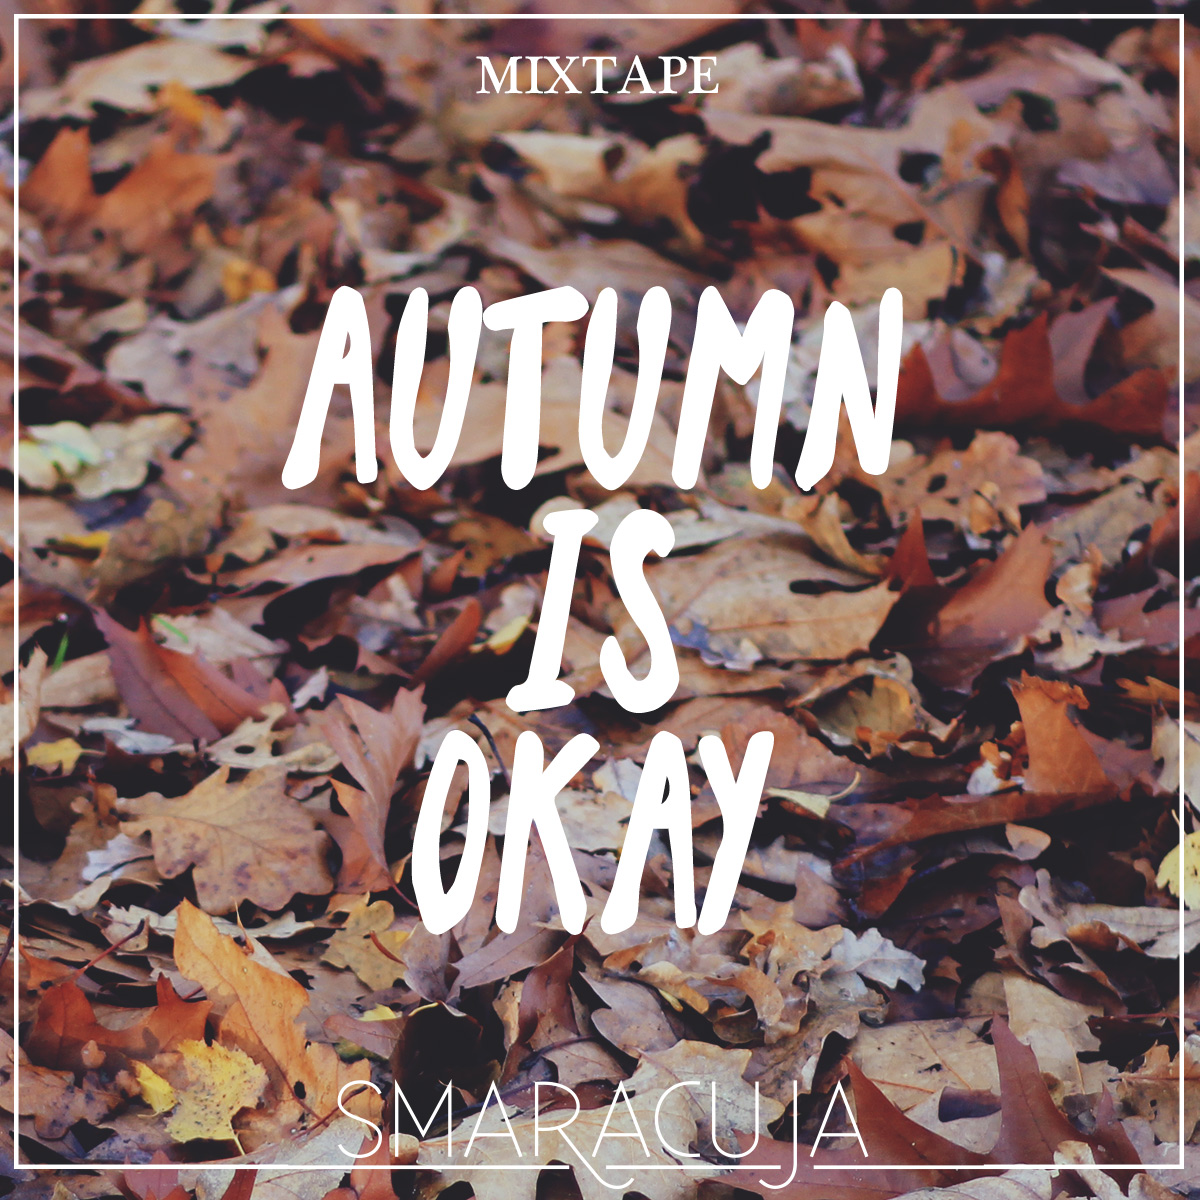 Mixtape: Autumn is okay